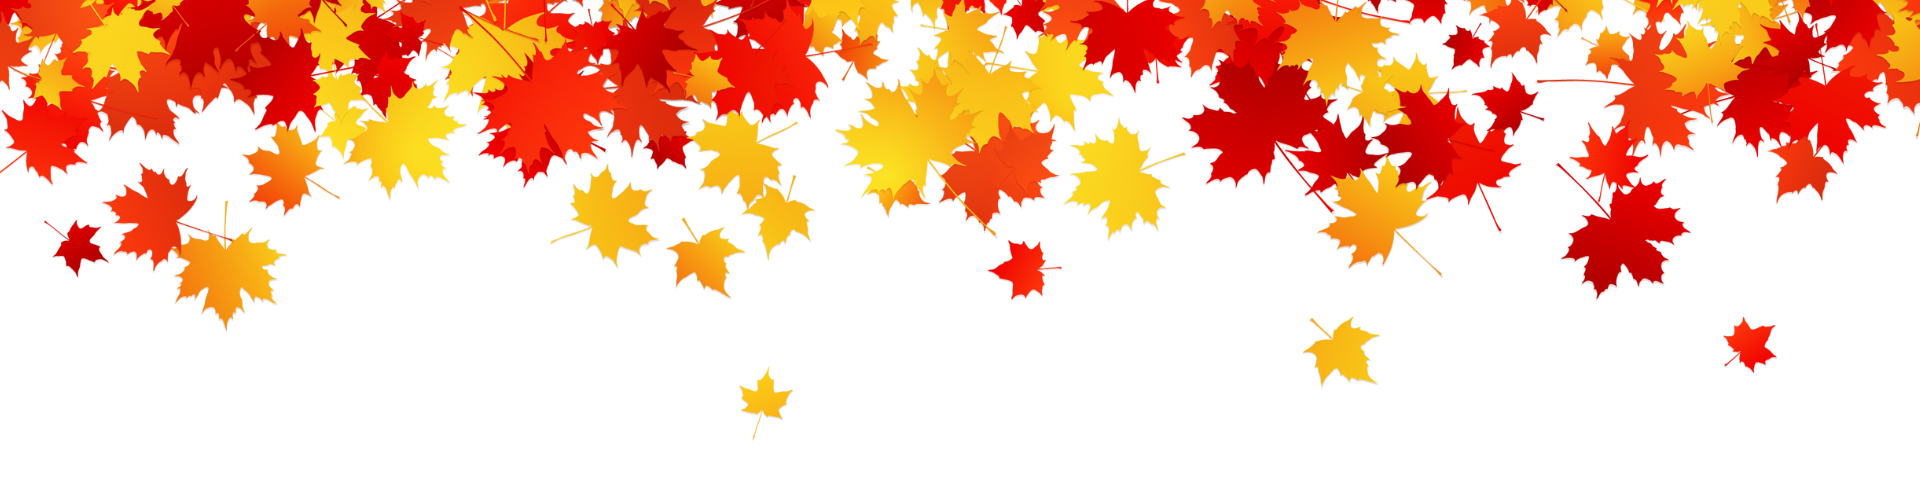 September 21: Fall Leaf Collection 2023 Begins October 2